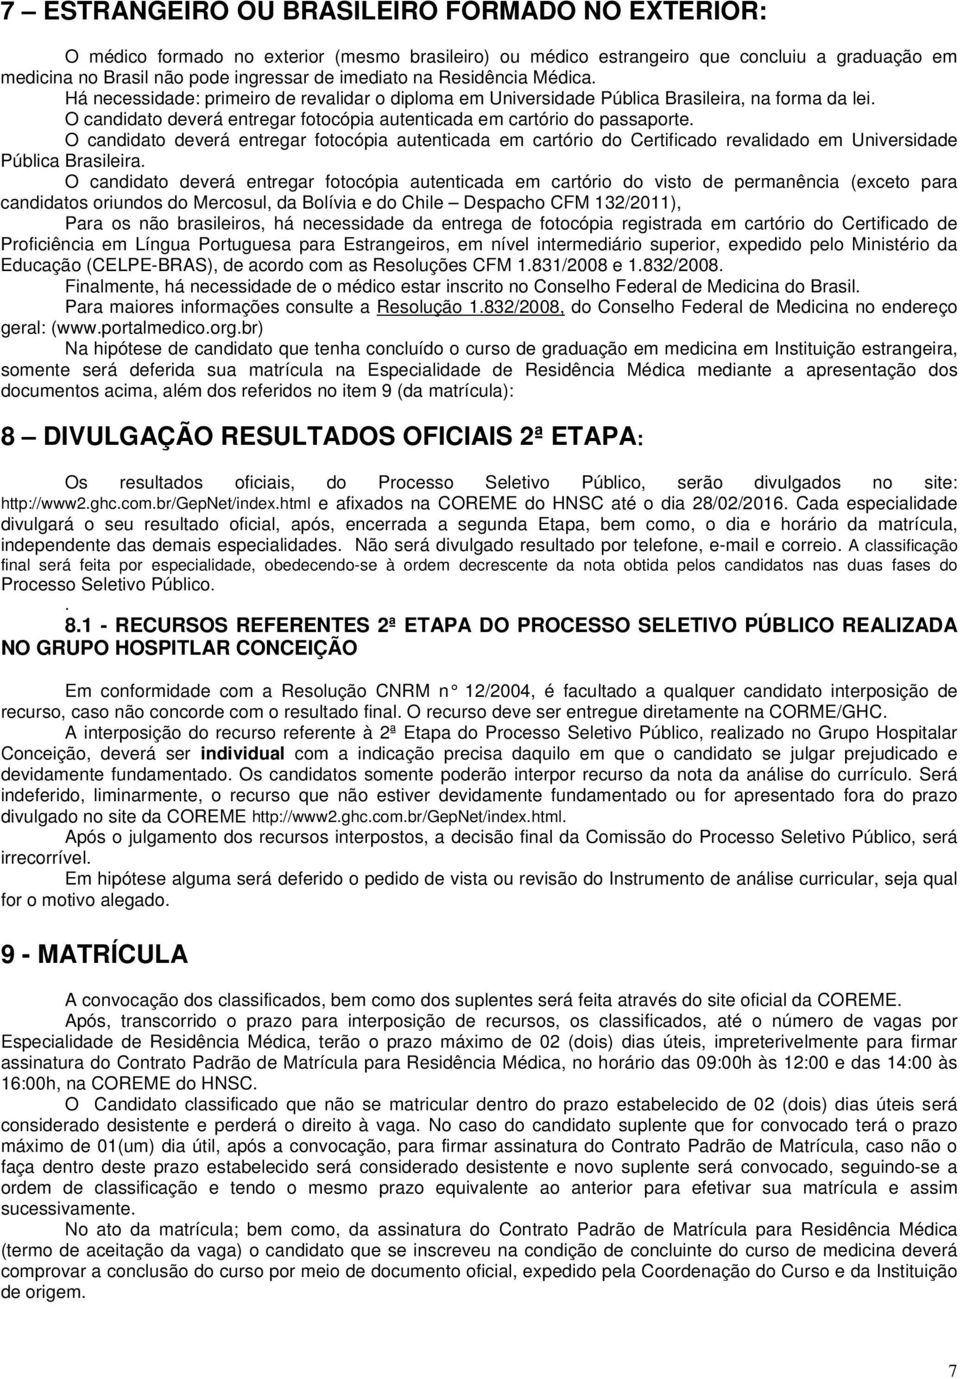 O candidato deverá entregar fotocópia autenticada em cartório do Certificado revalidado em Universidade Pública Brasileira.